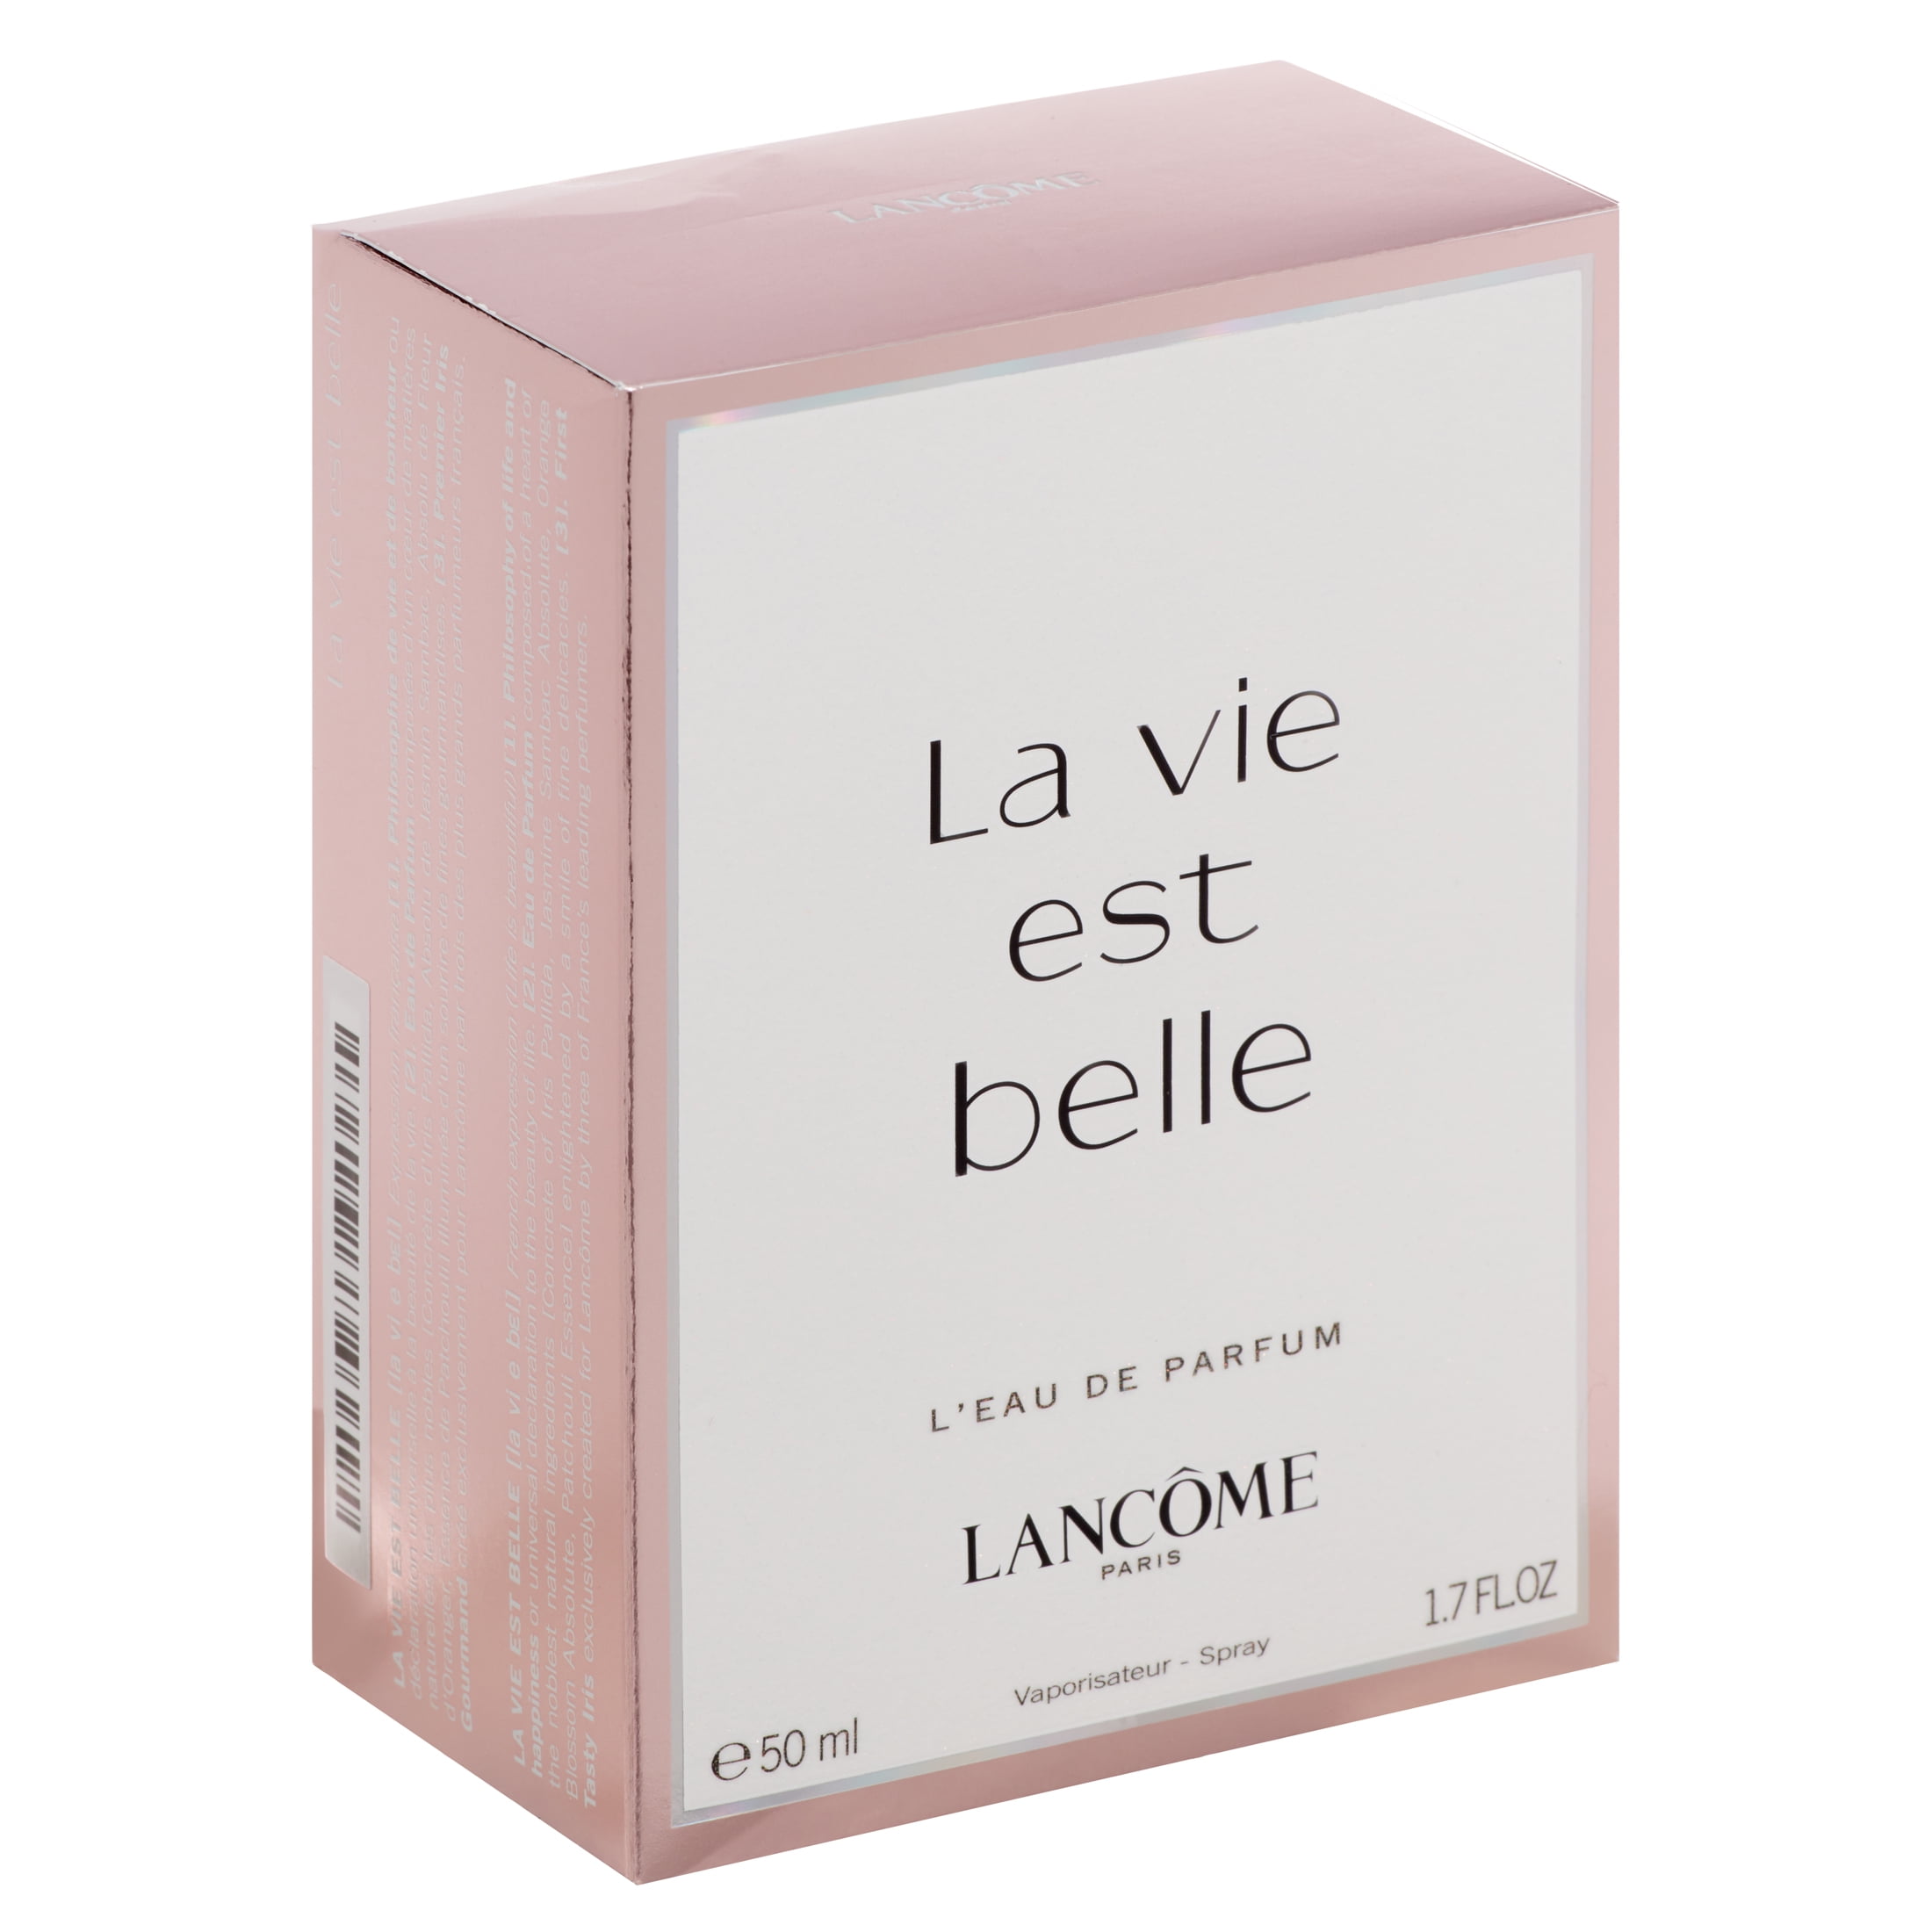 La Vie Est Belle Eau de Parfum, for 3.4 Oz - Walmart.com